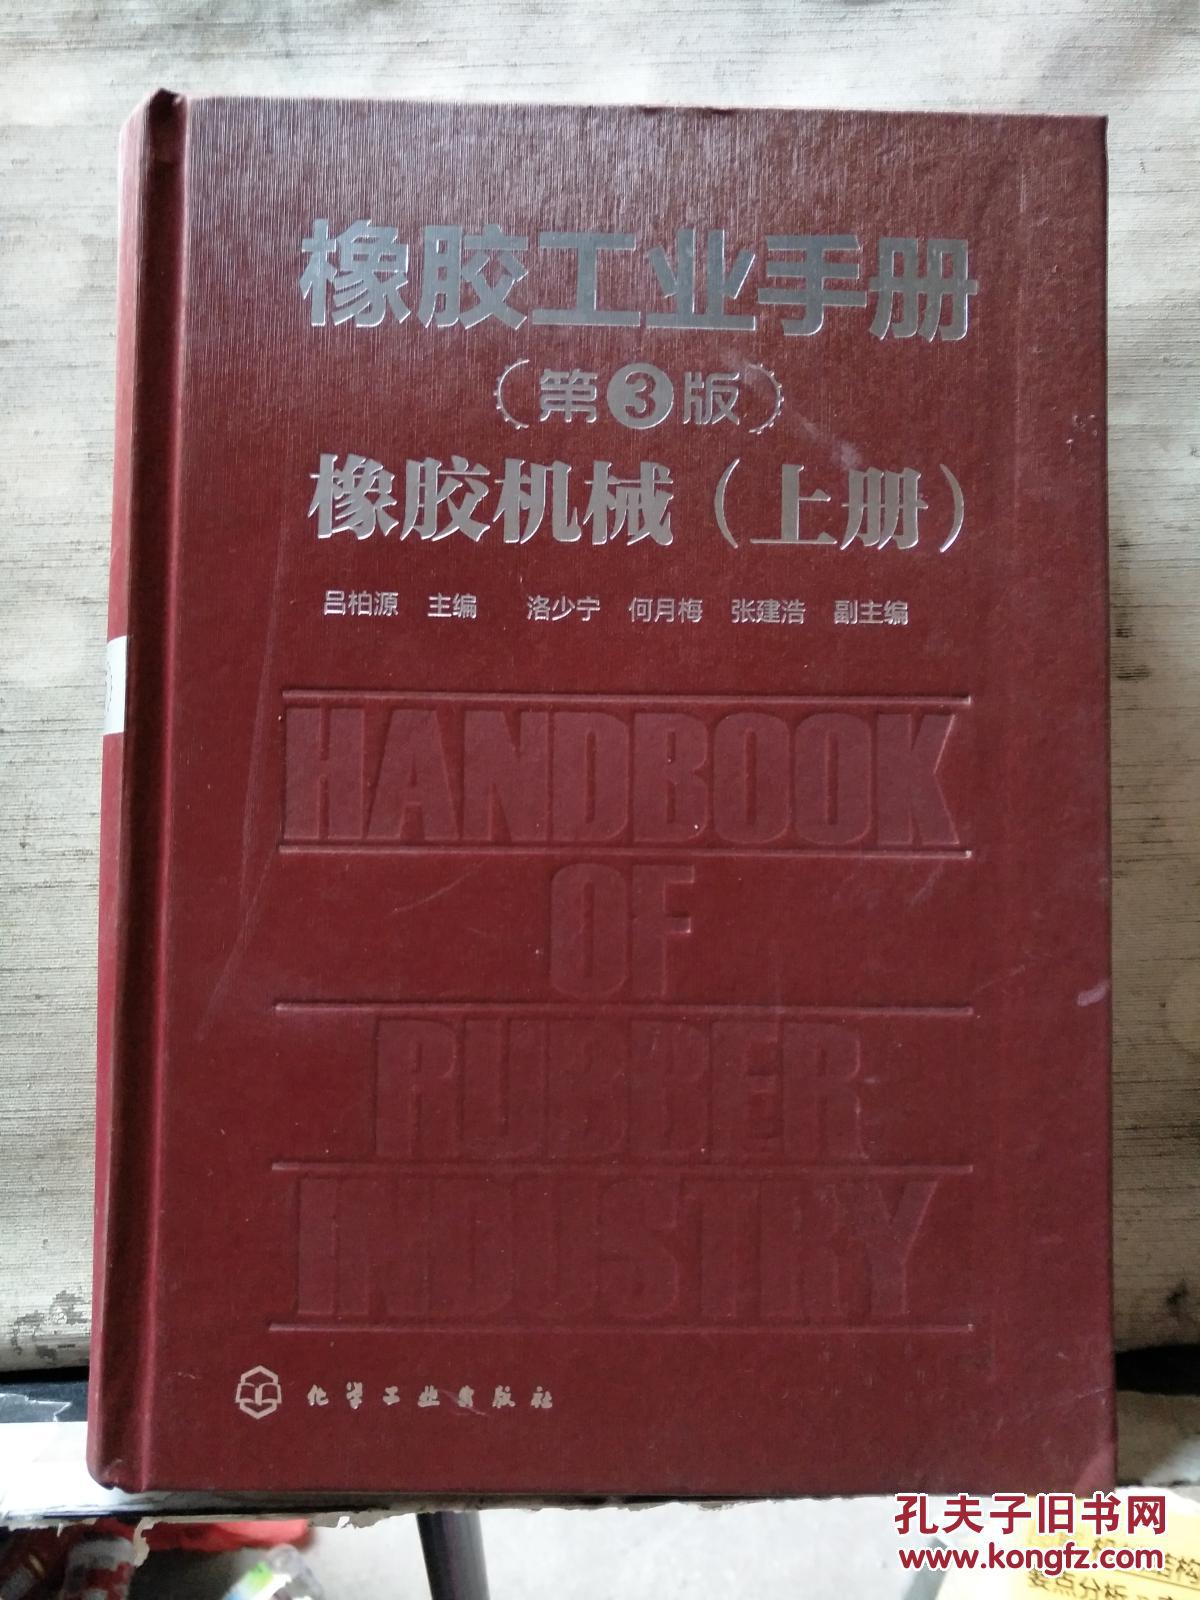 橡胶工业（第三版）橡胶机械（上册）【16开精装】书的重量为2公斤